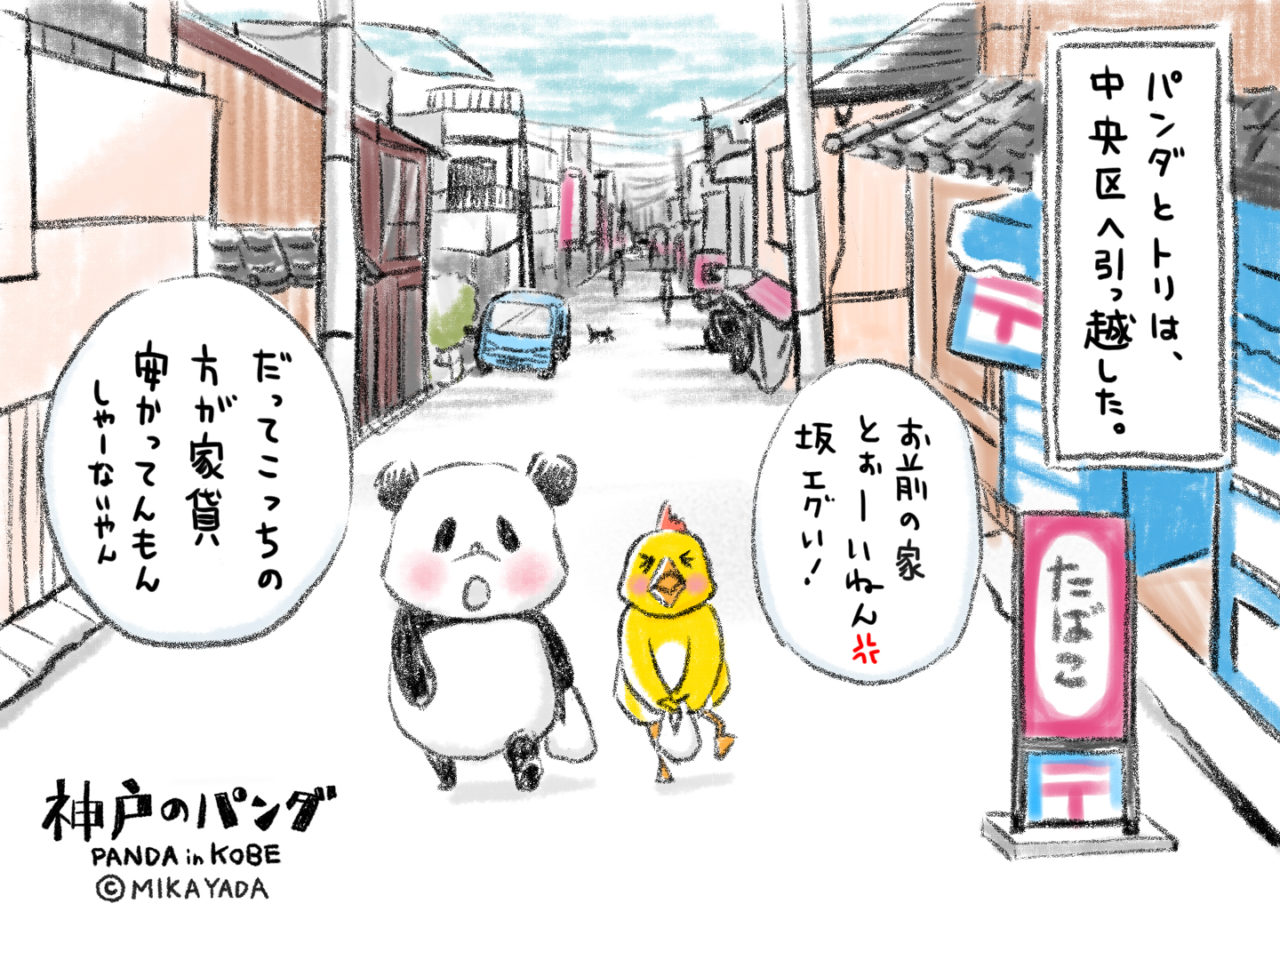 神戸のパンダ、坂道を登る